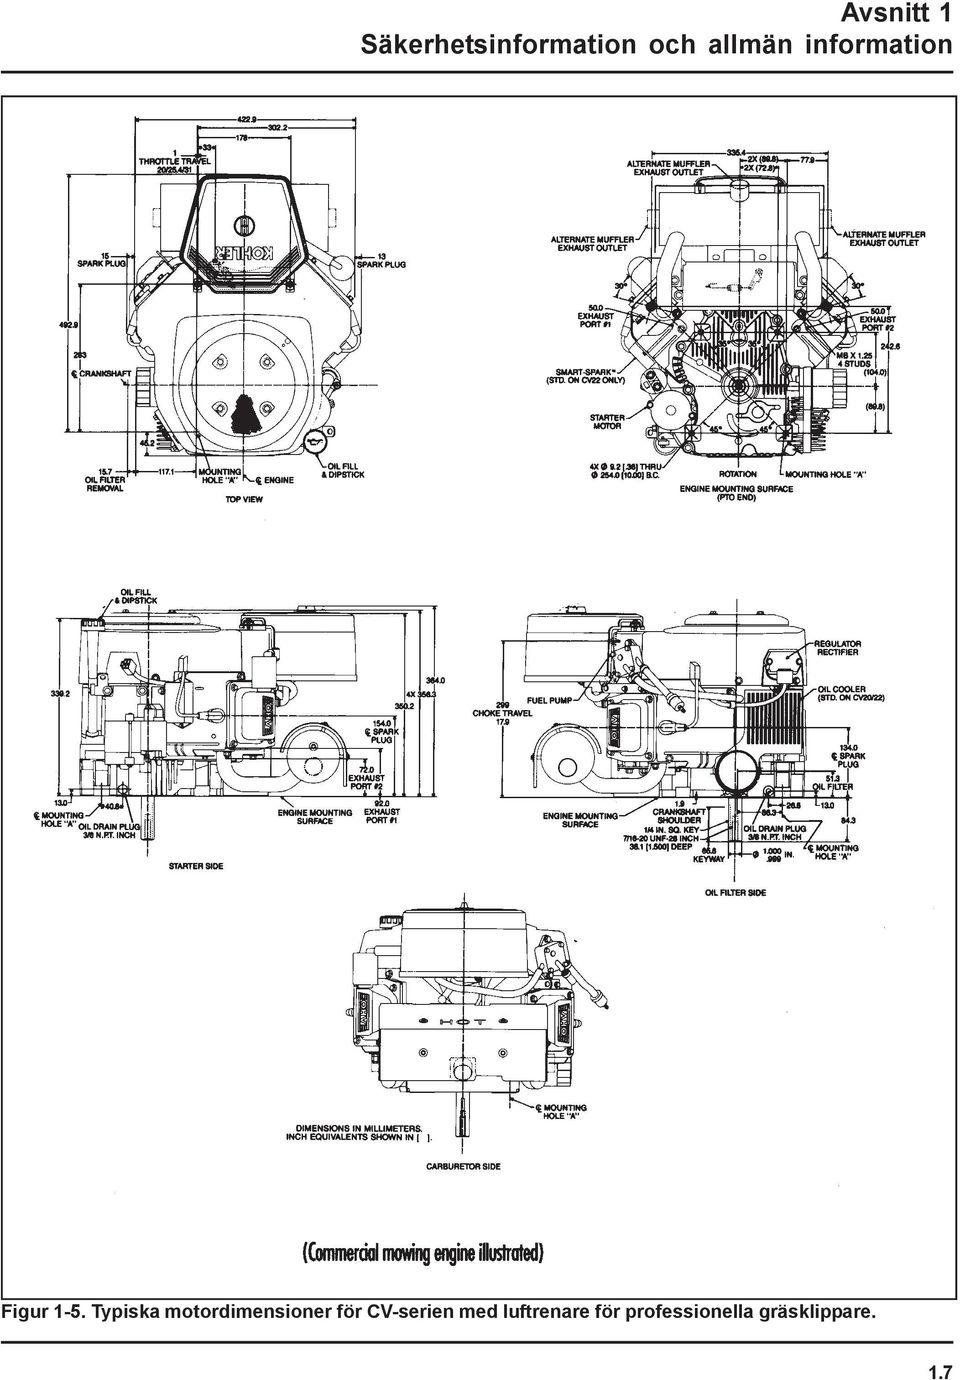 Typiska motordimensioner för CV-serien